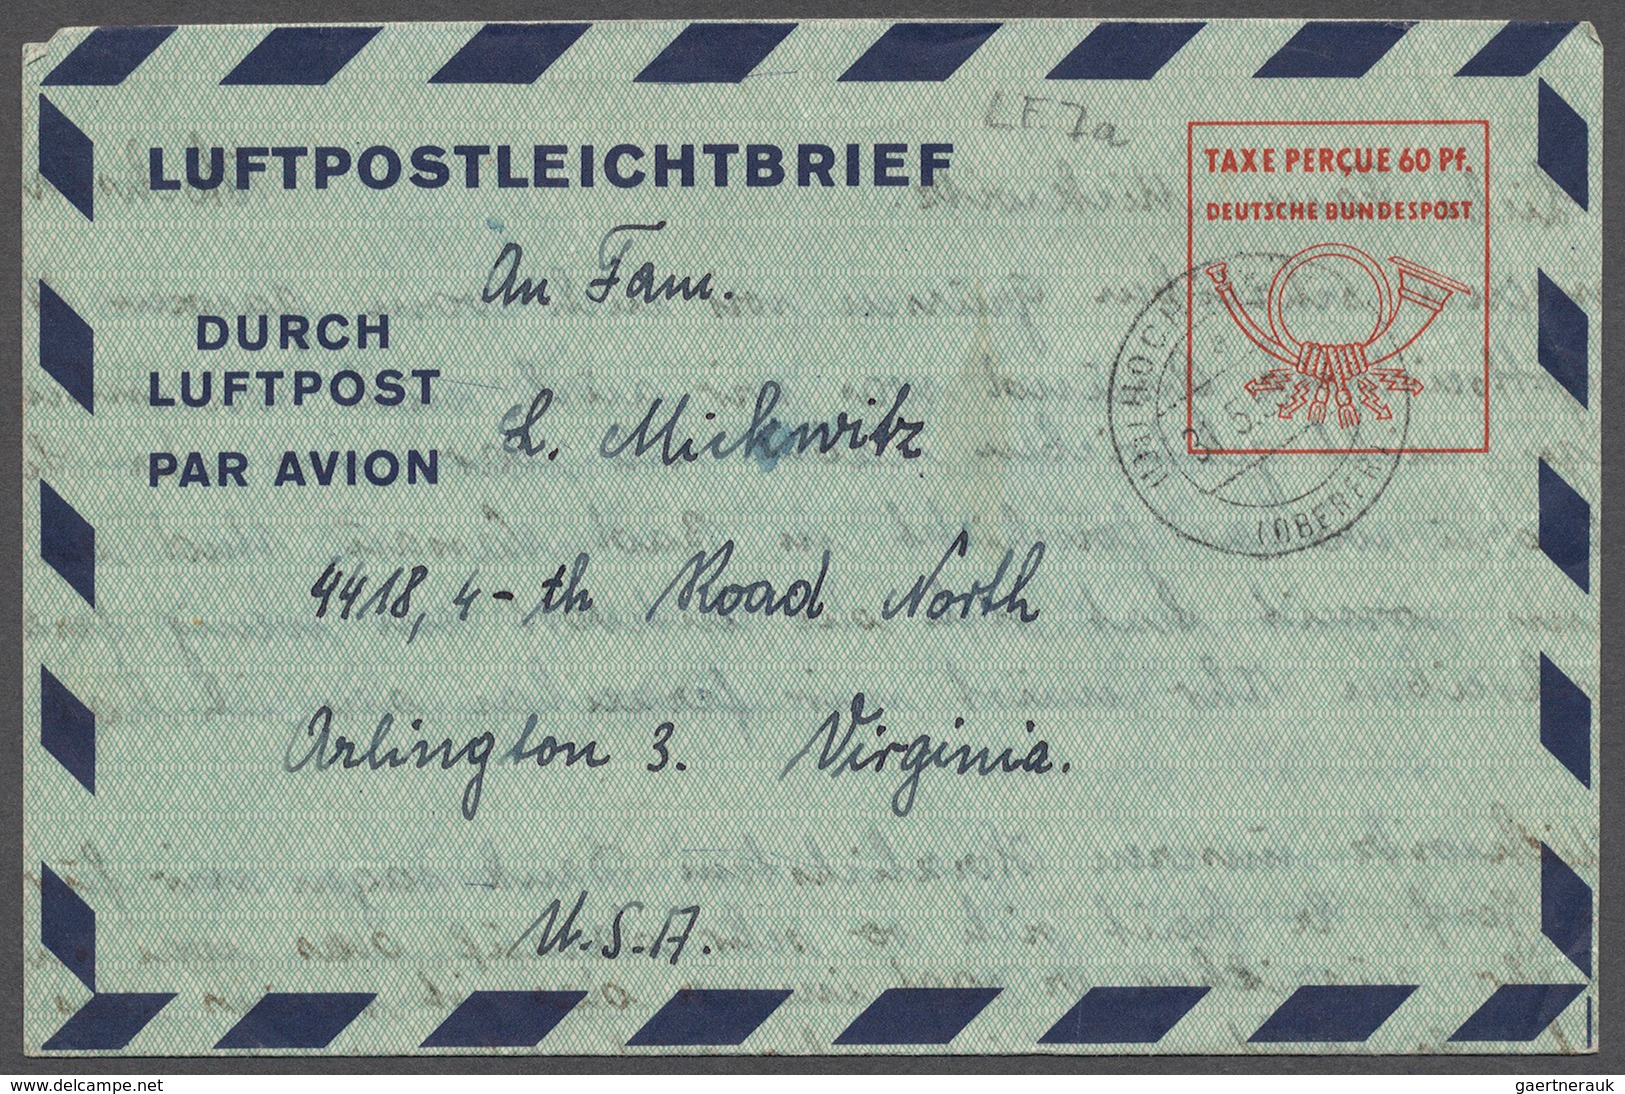 32731 Bundesrepublik Deutschland: 1950/97, interessanter Posten mit 233 Ganzsachen, darunter Spitzenstücke